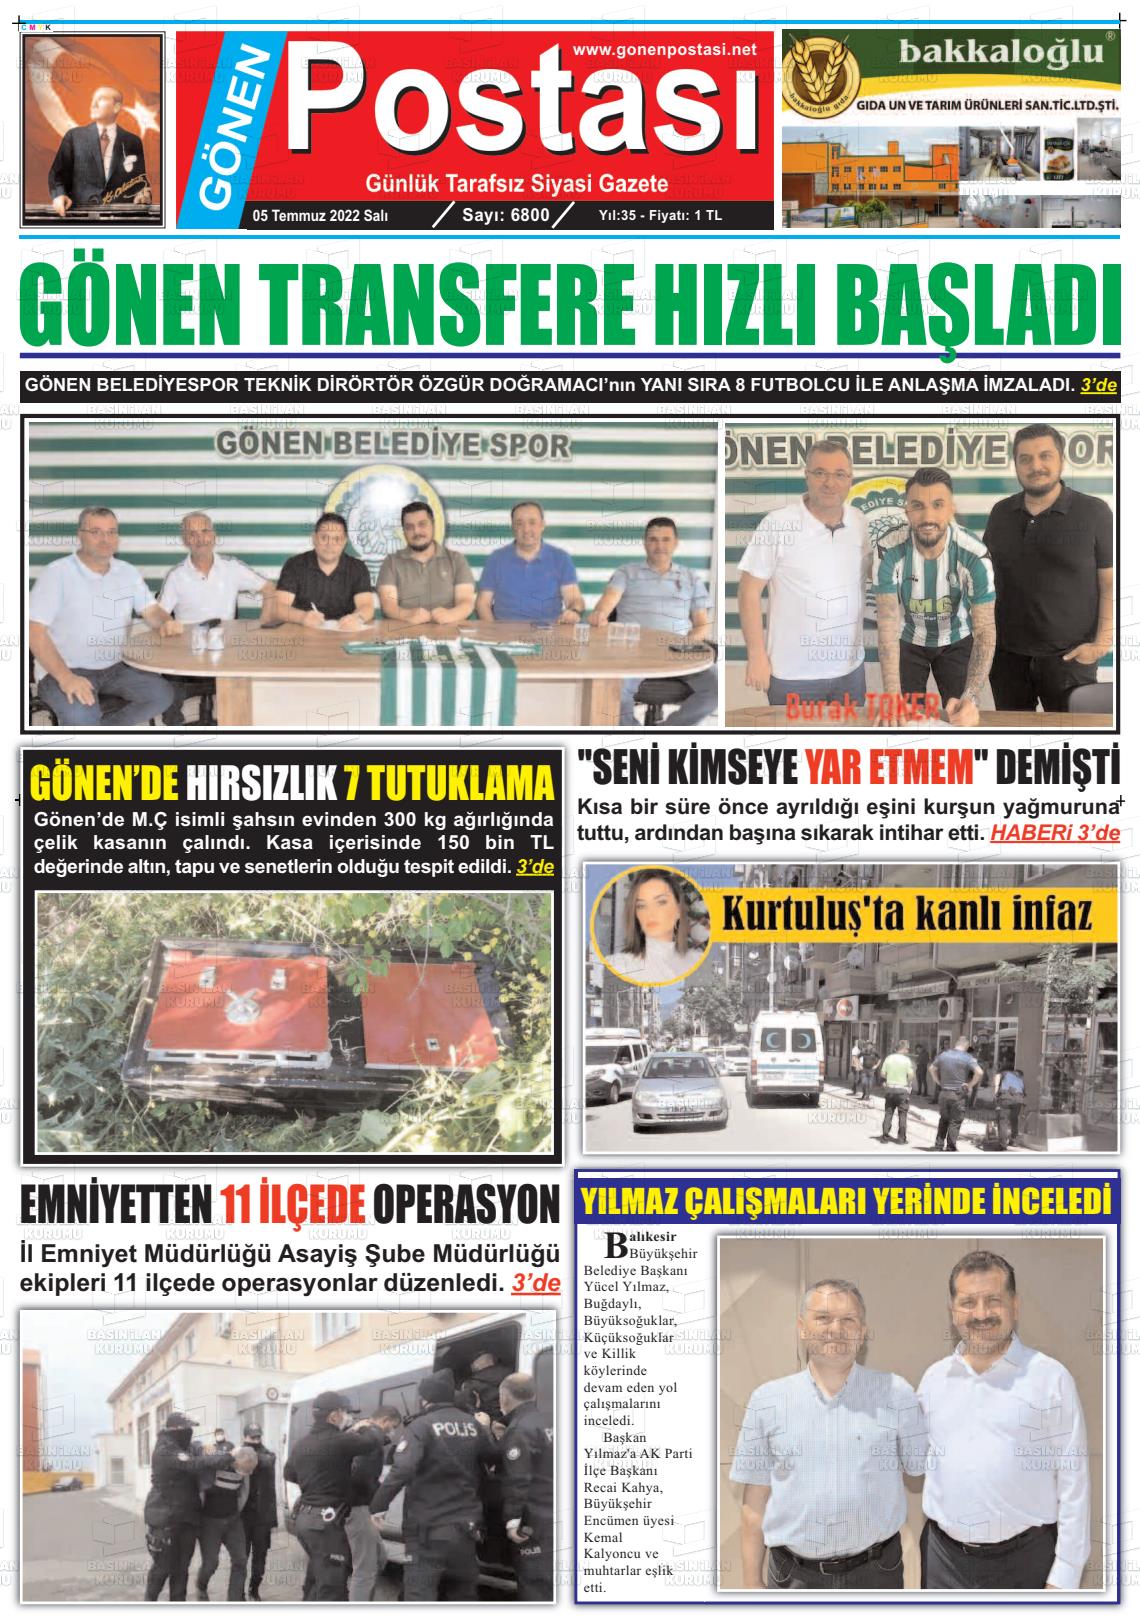 05 Temmuz 2022 Gönen Postası Gazete Manşeti